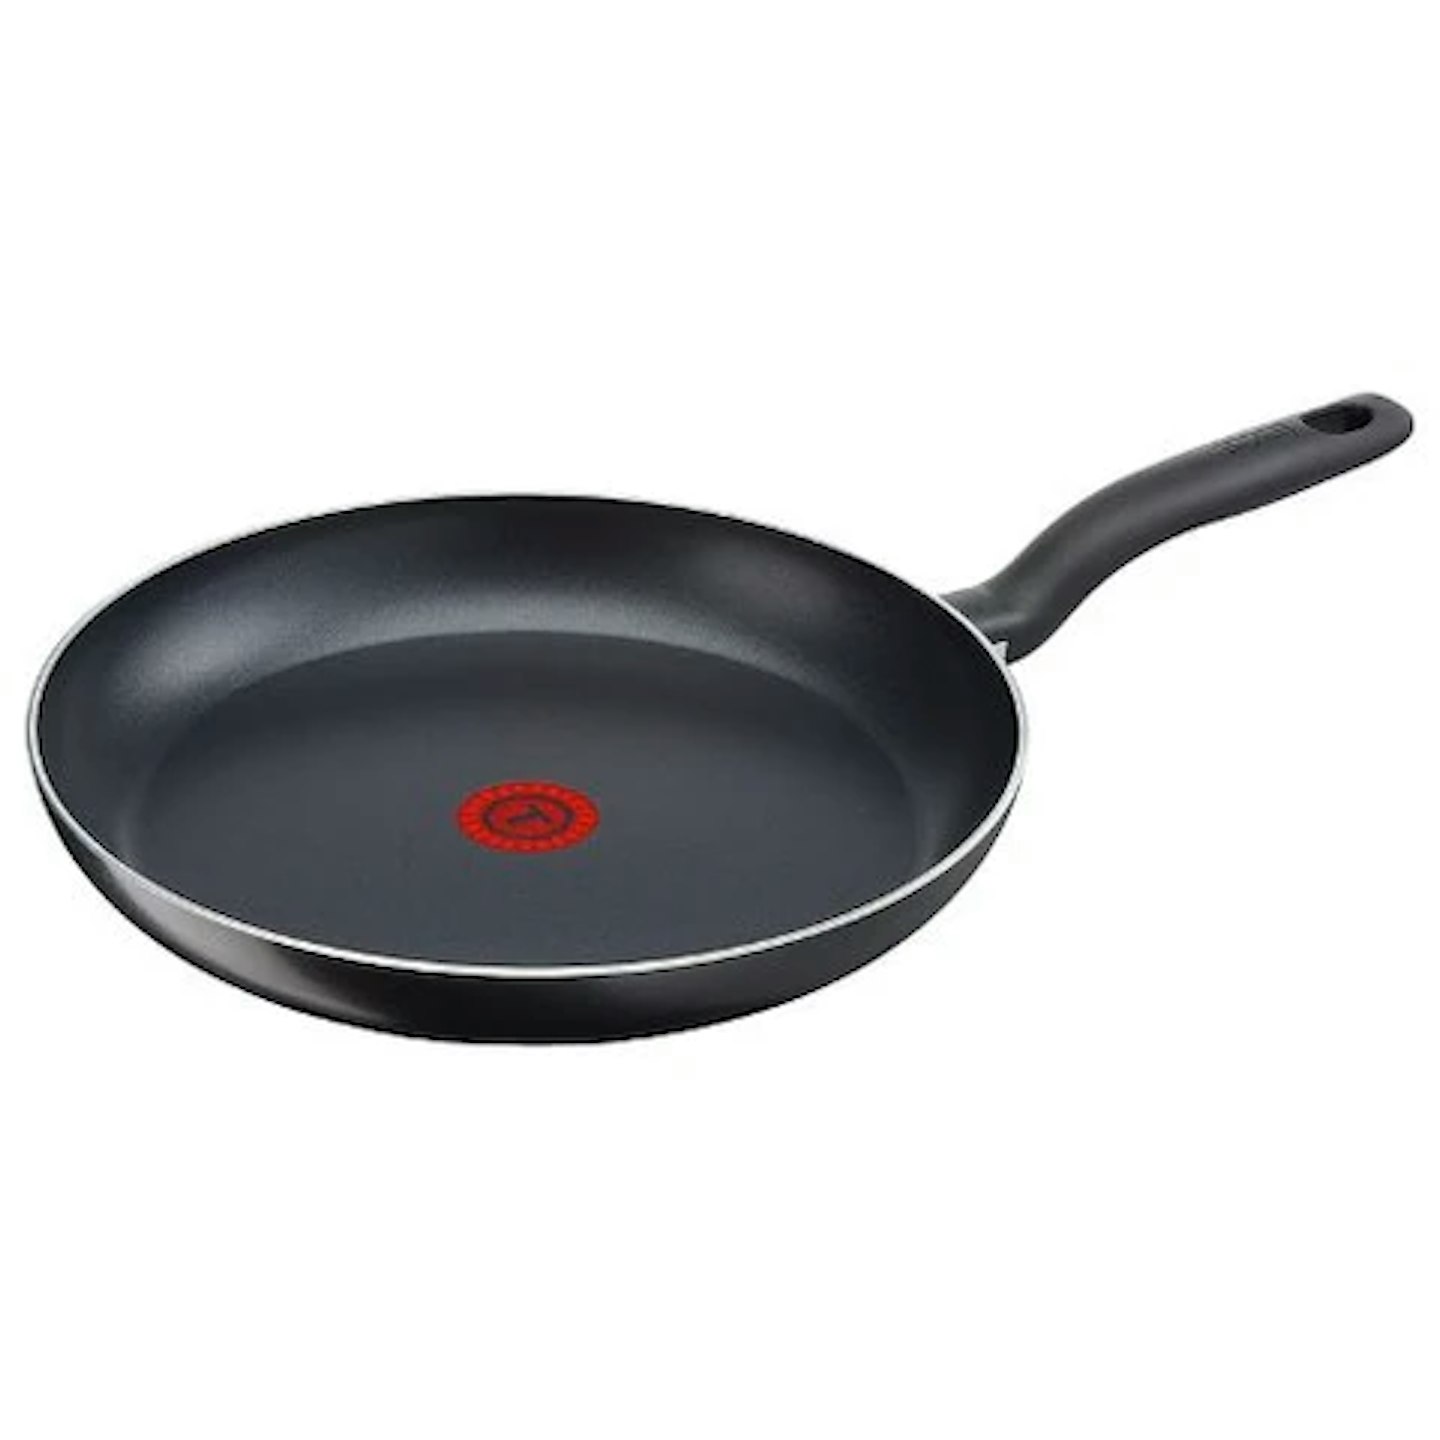 Tefal Precision Plus Non-Stick Frying Pan